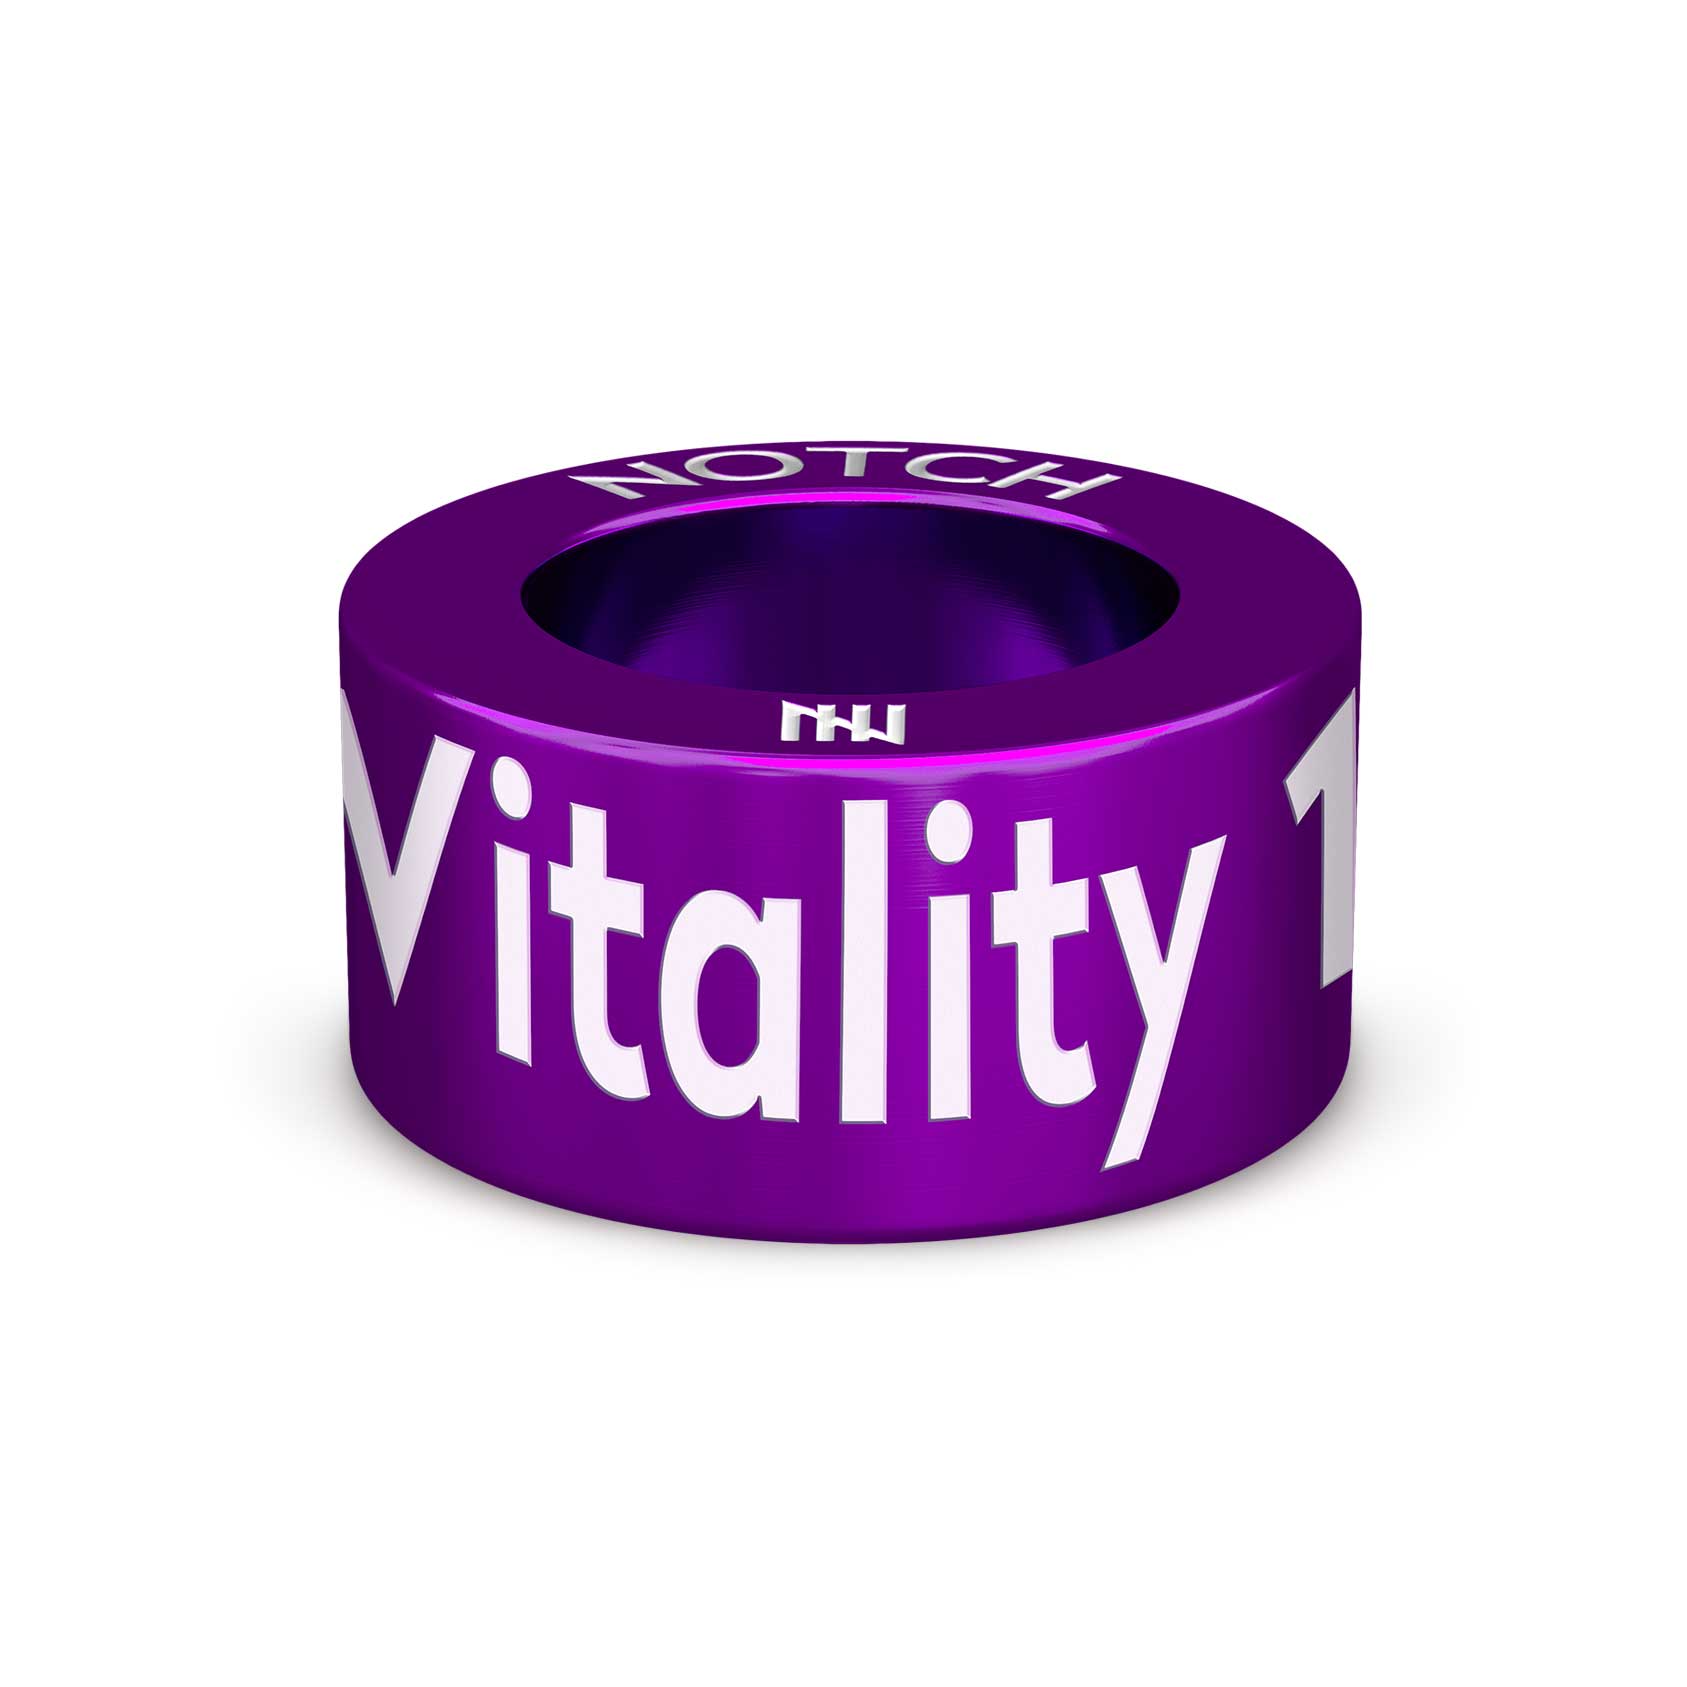 Vitality 10k NOTCH Charm